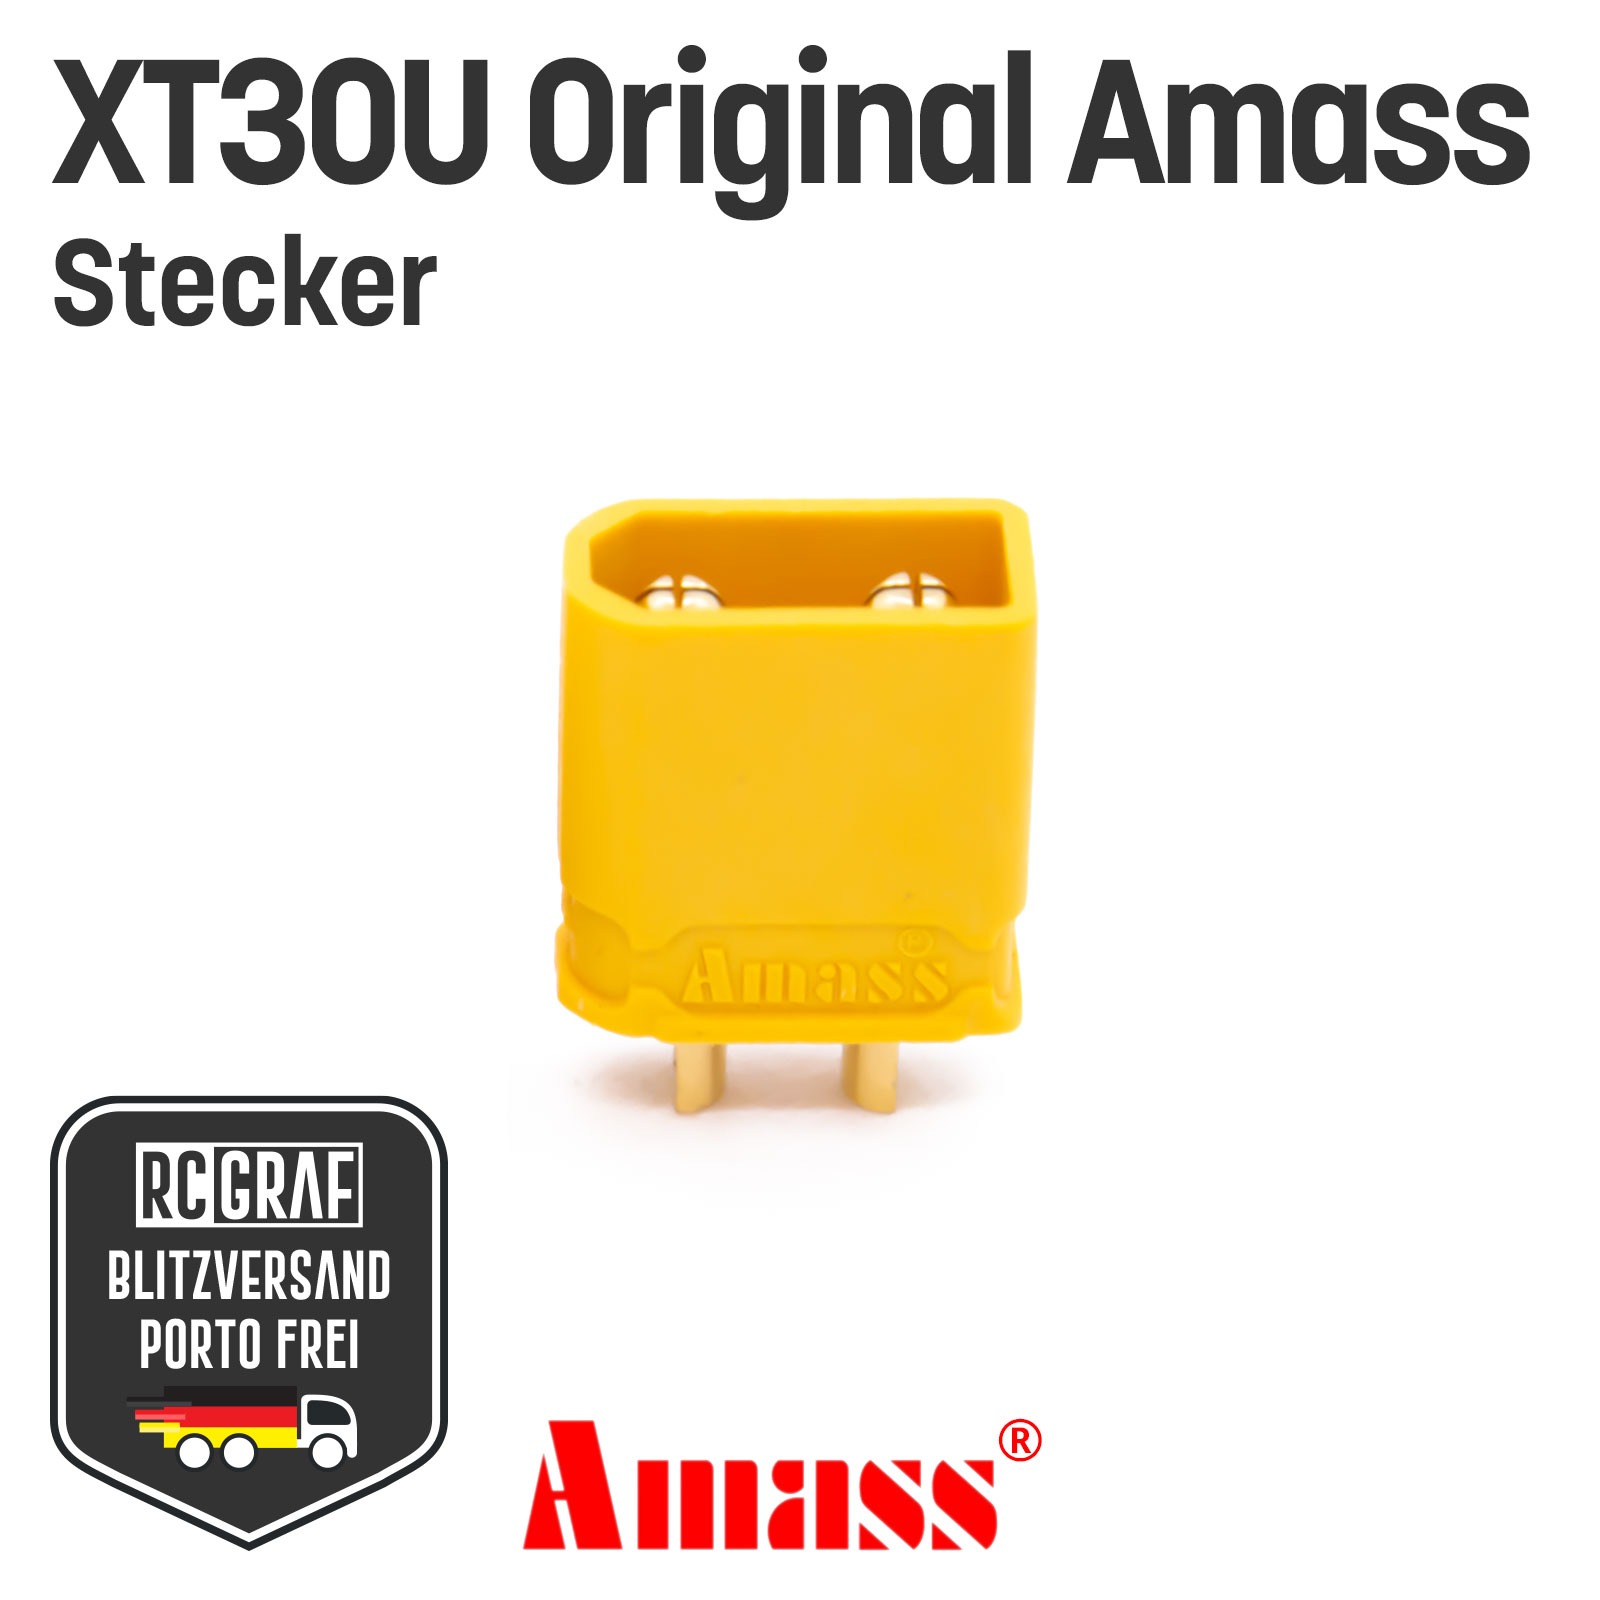 10 Stecker XT30U Original Amass 2